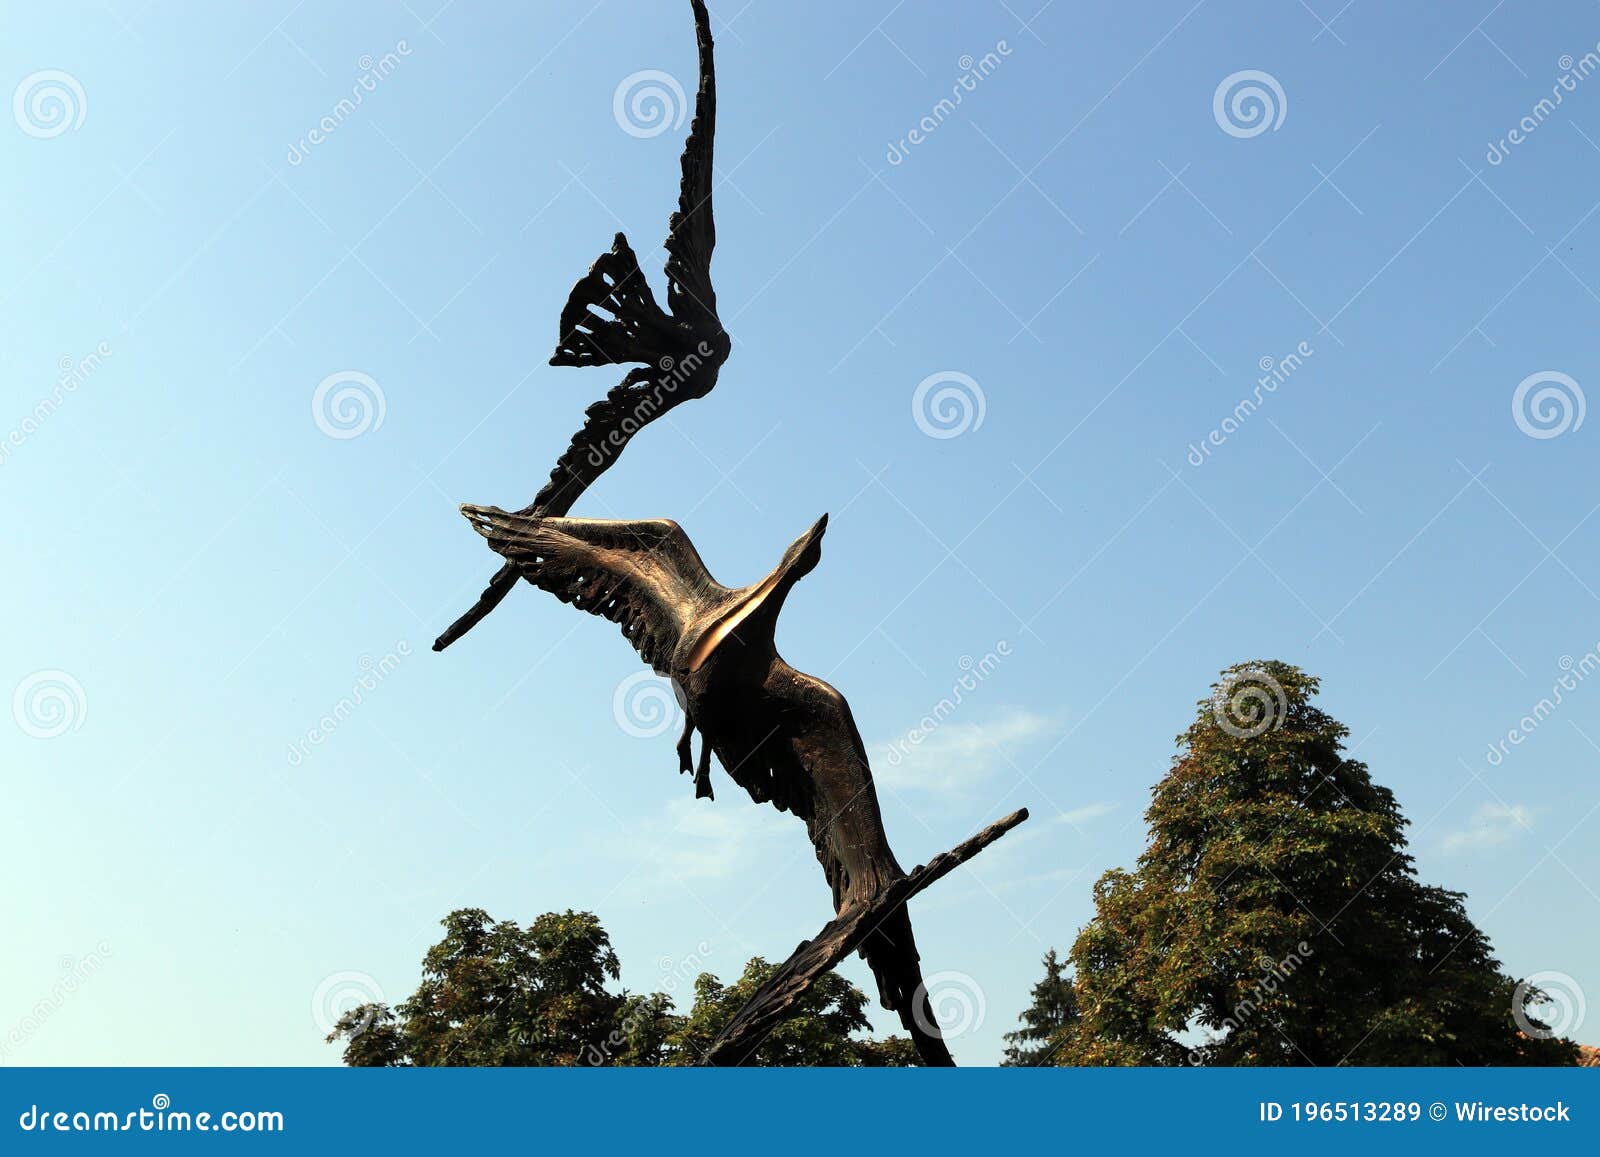 escultura de unas aves.